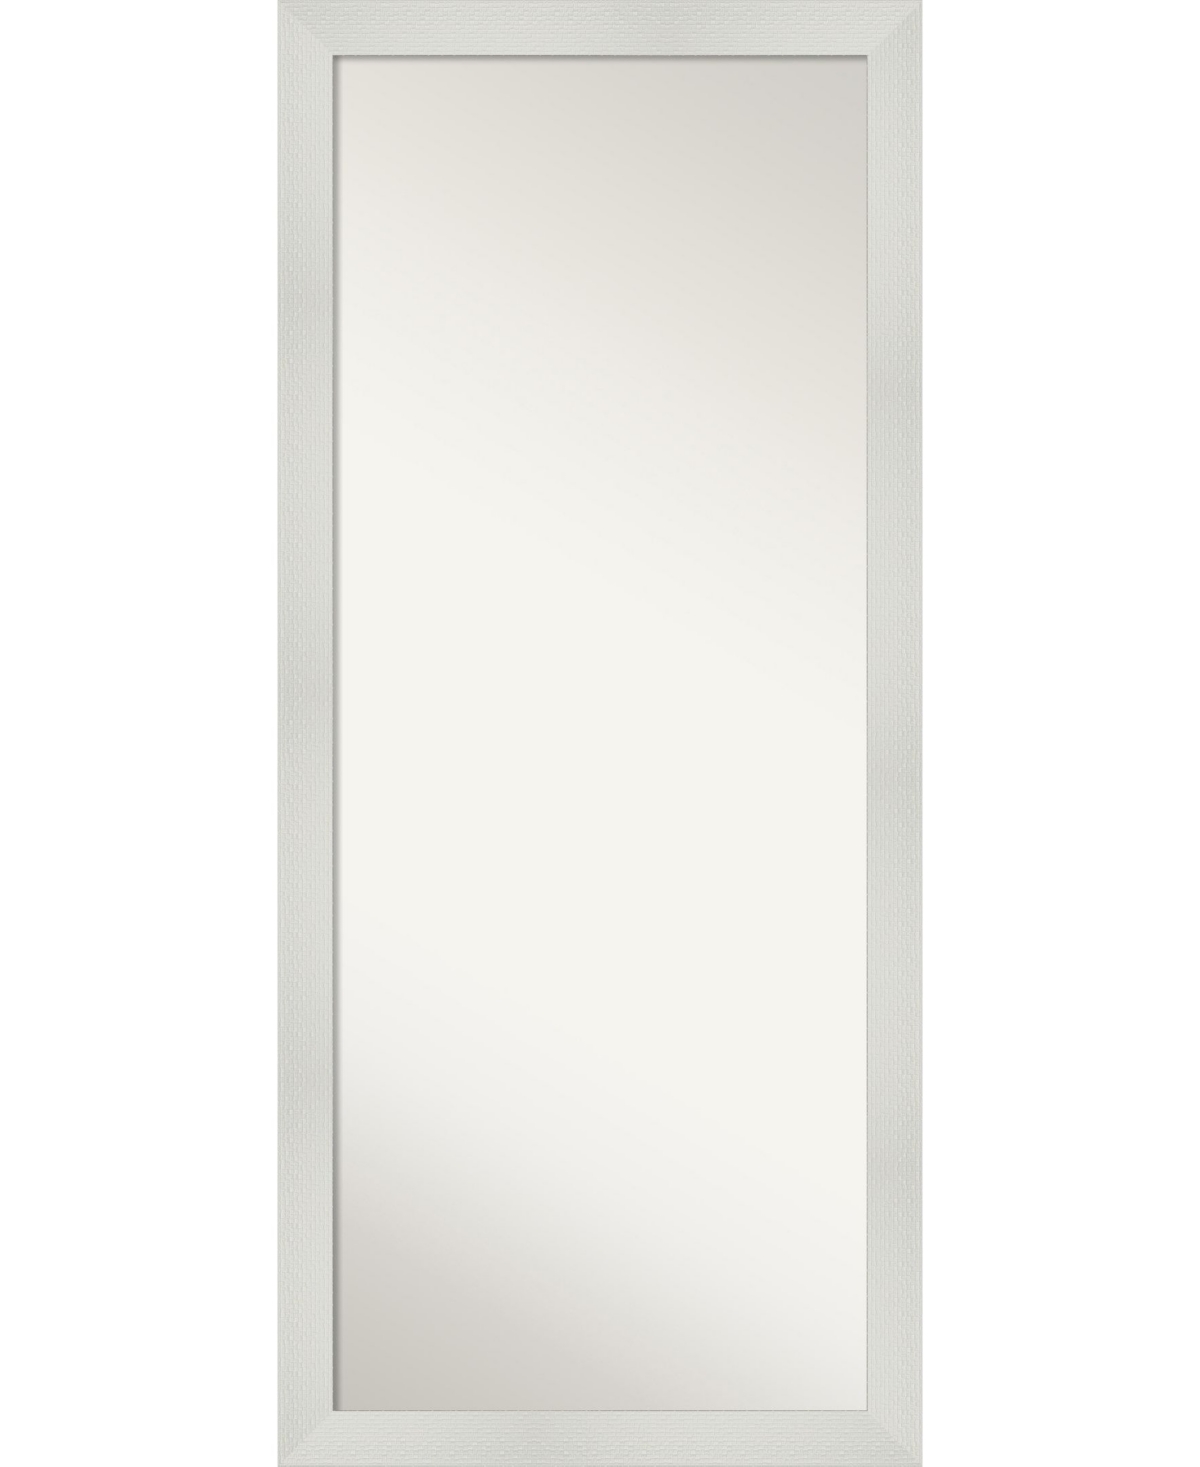 Mosaic Framed Floor/Leaner Full Length Mirror, 28.25" x 64.25" - White